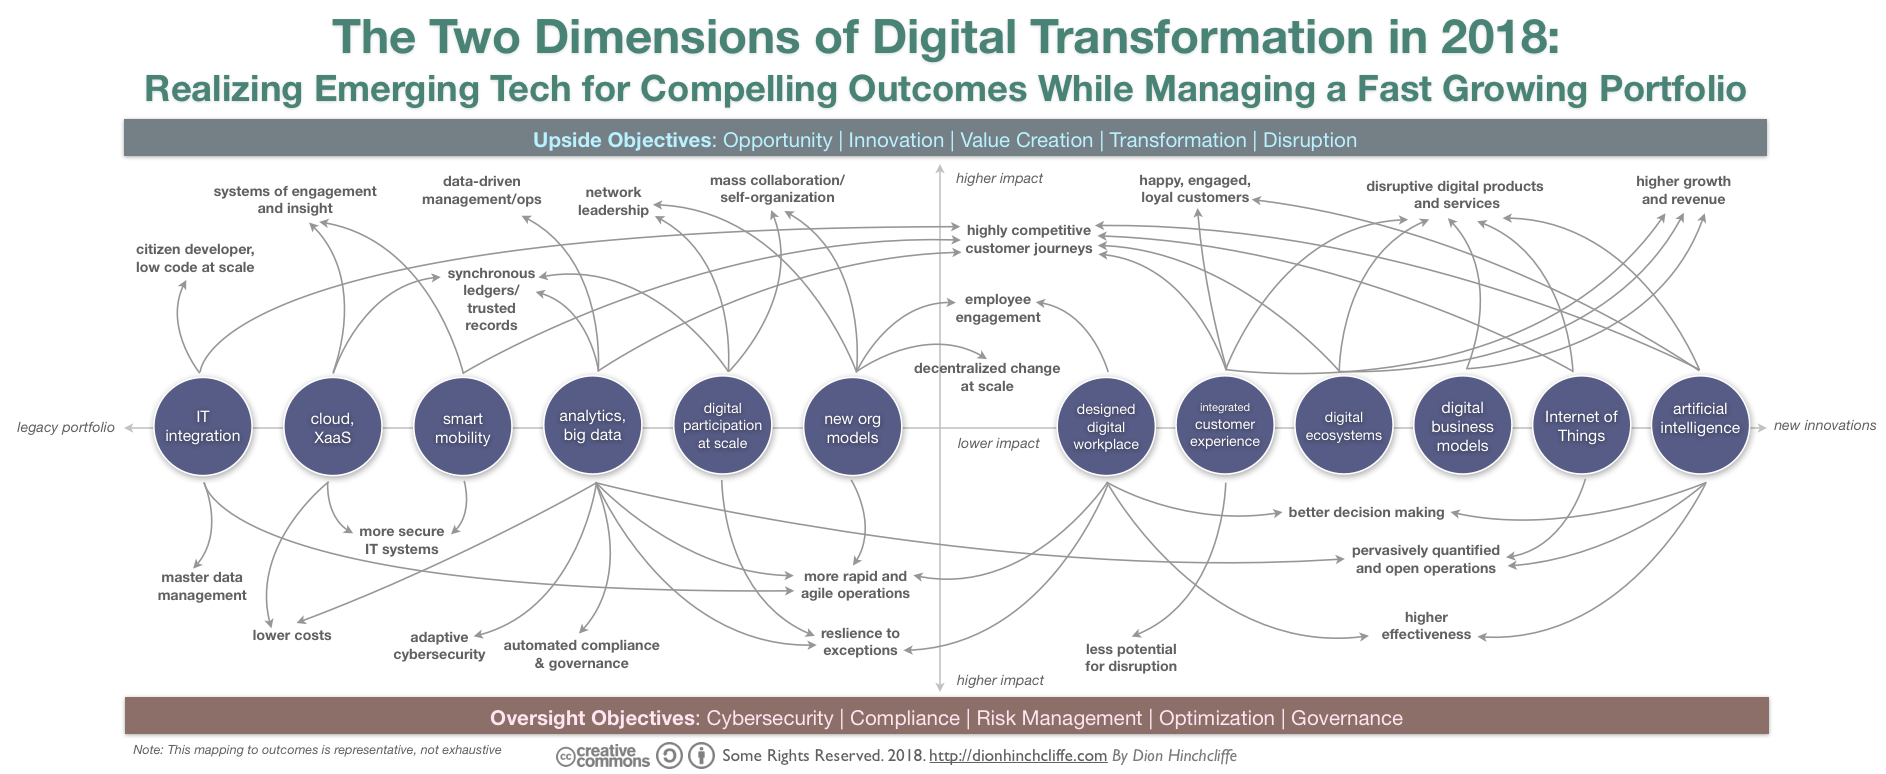 digital transformation pdf 2018